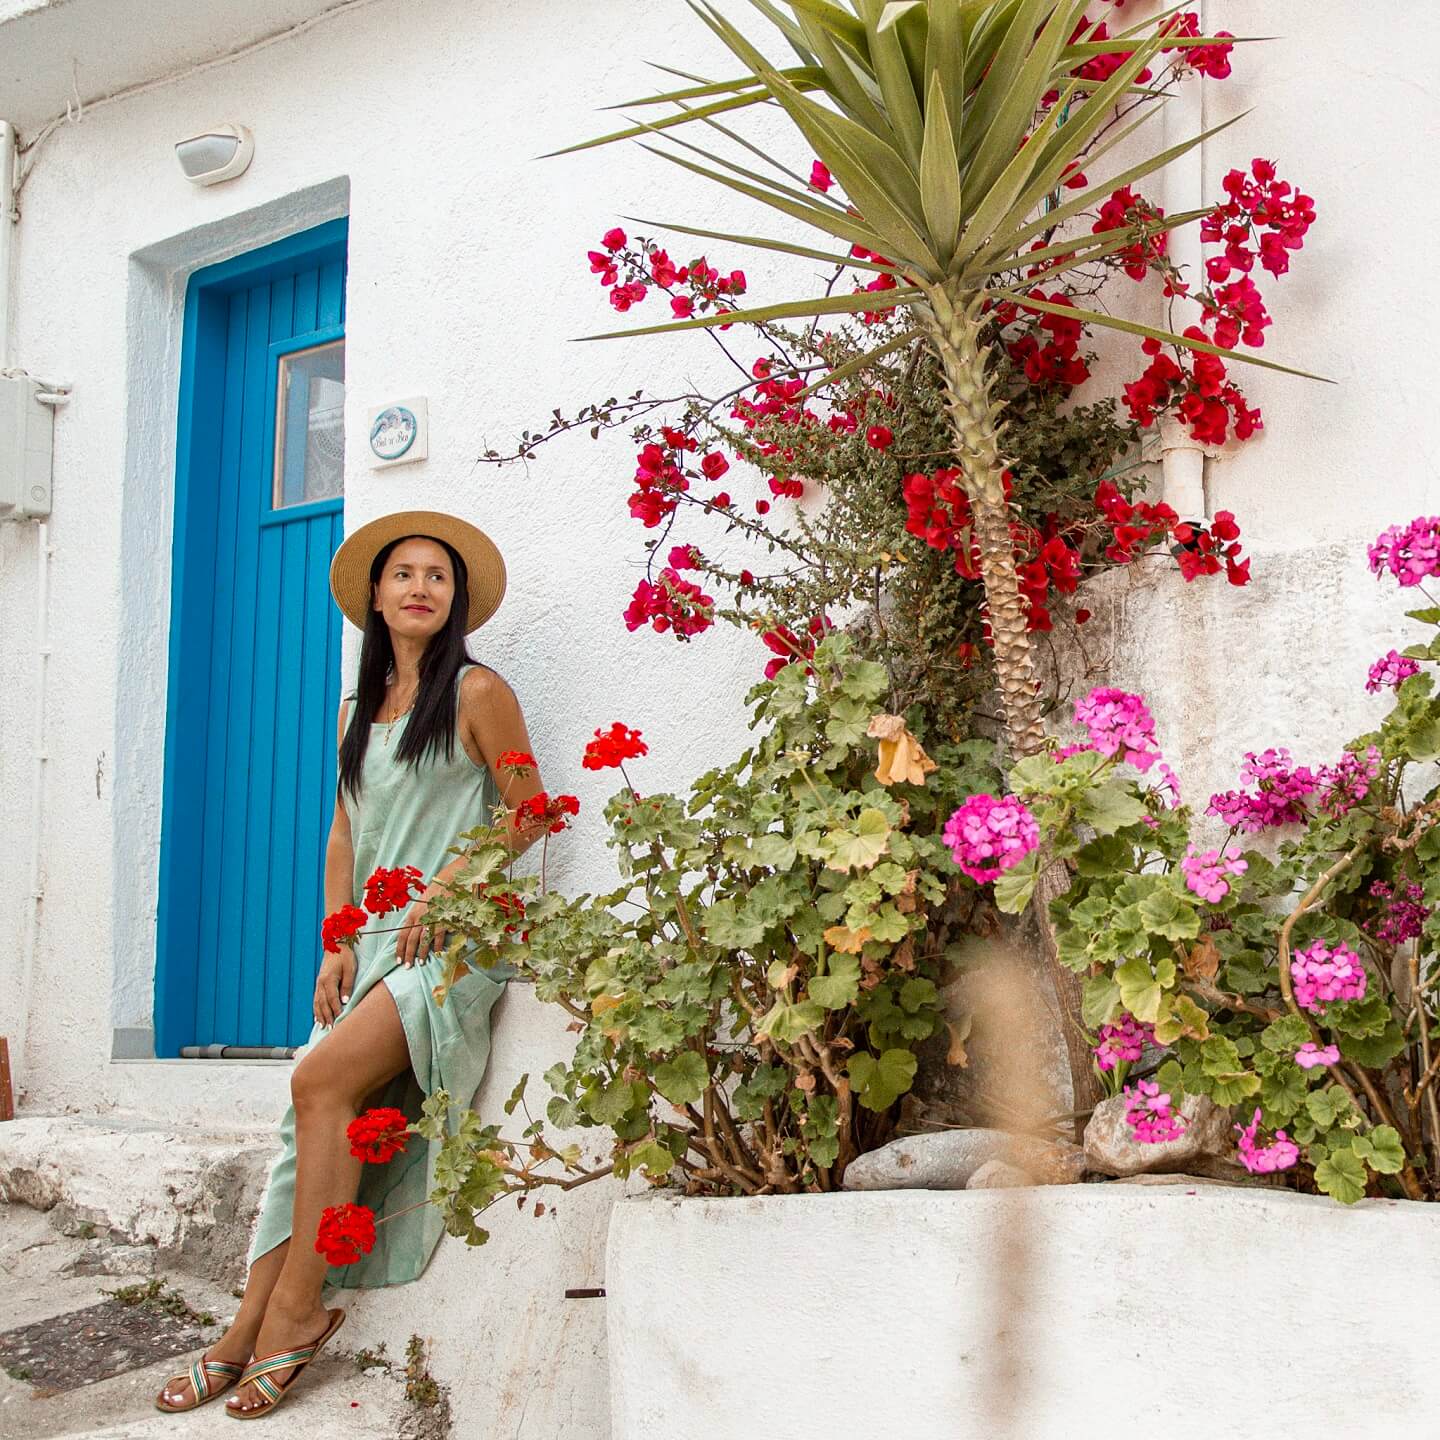 Stella between red flowers and blue doors in Kritsa Crete